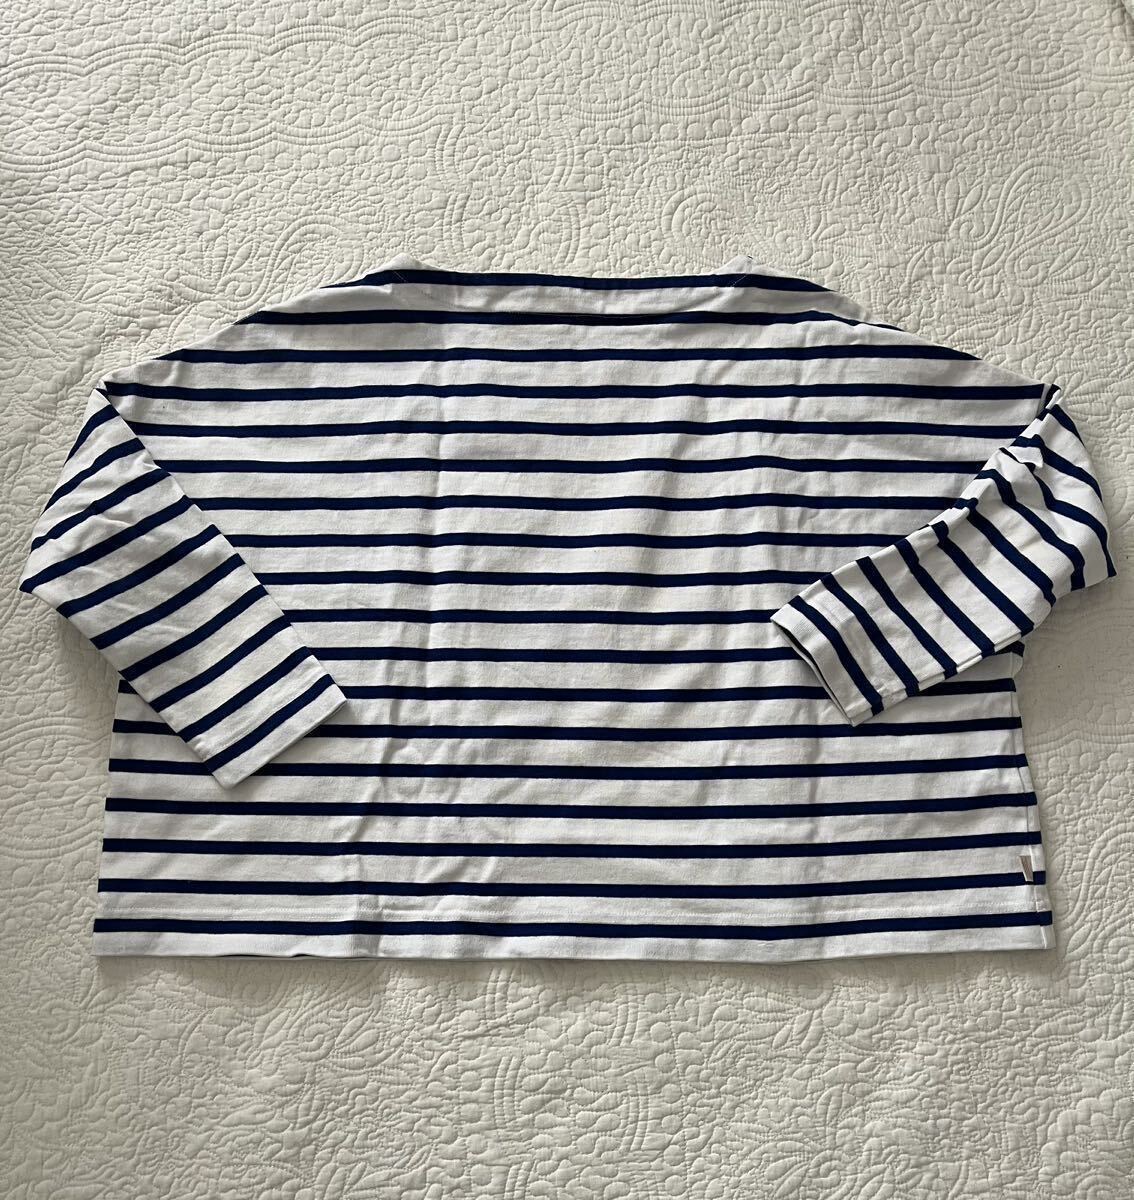 【Traditional Weatherwear】トラディショナルウェザーウェア カットソー Tシャツ 7分袖 ボーダー Sサイズの画像2